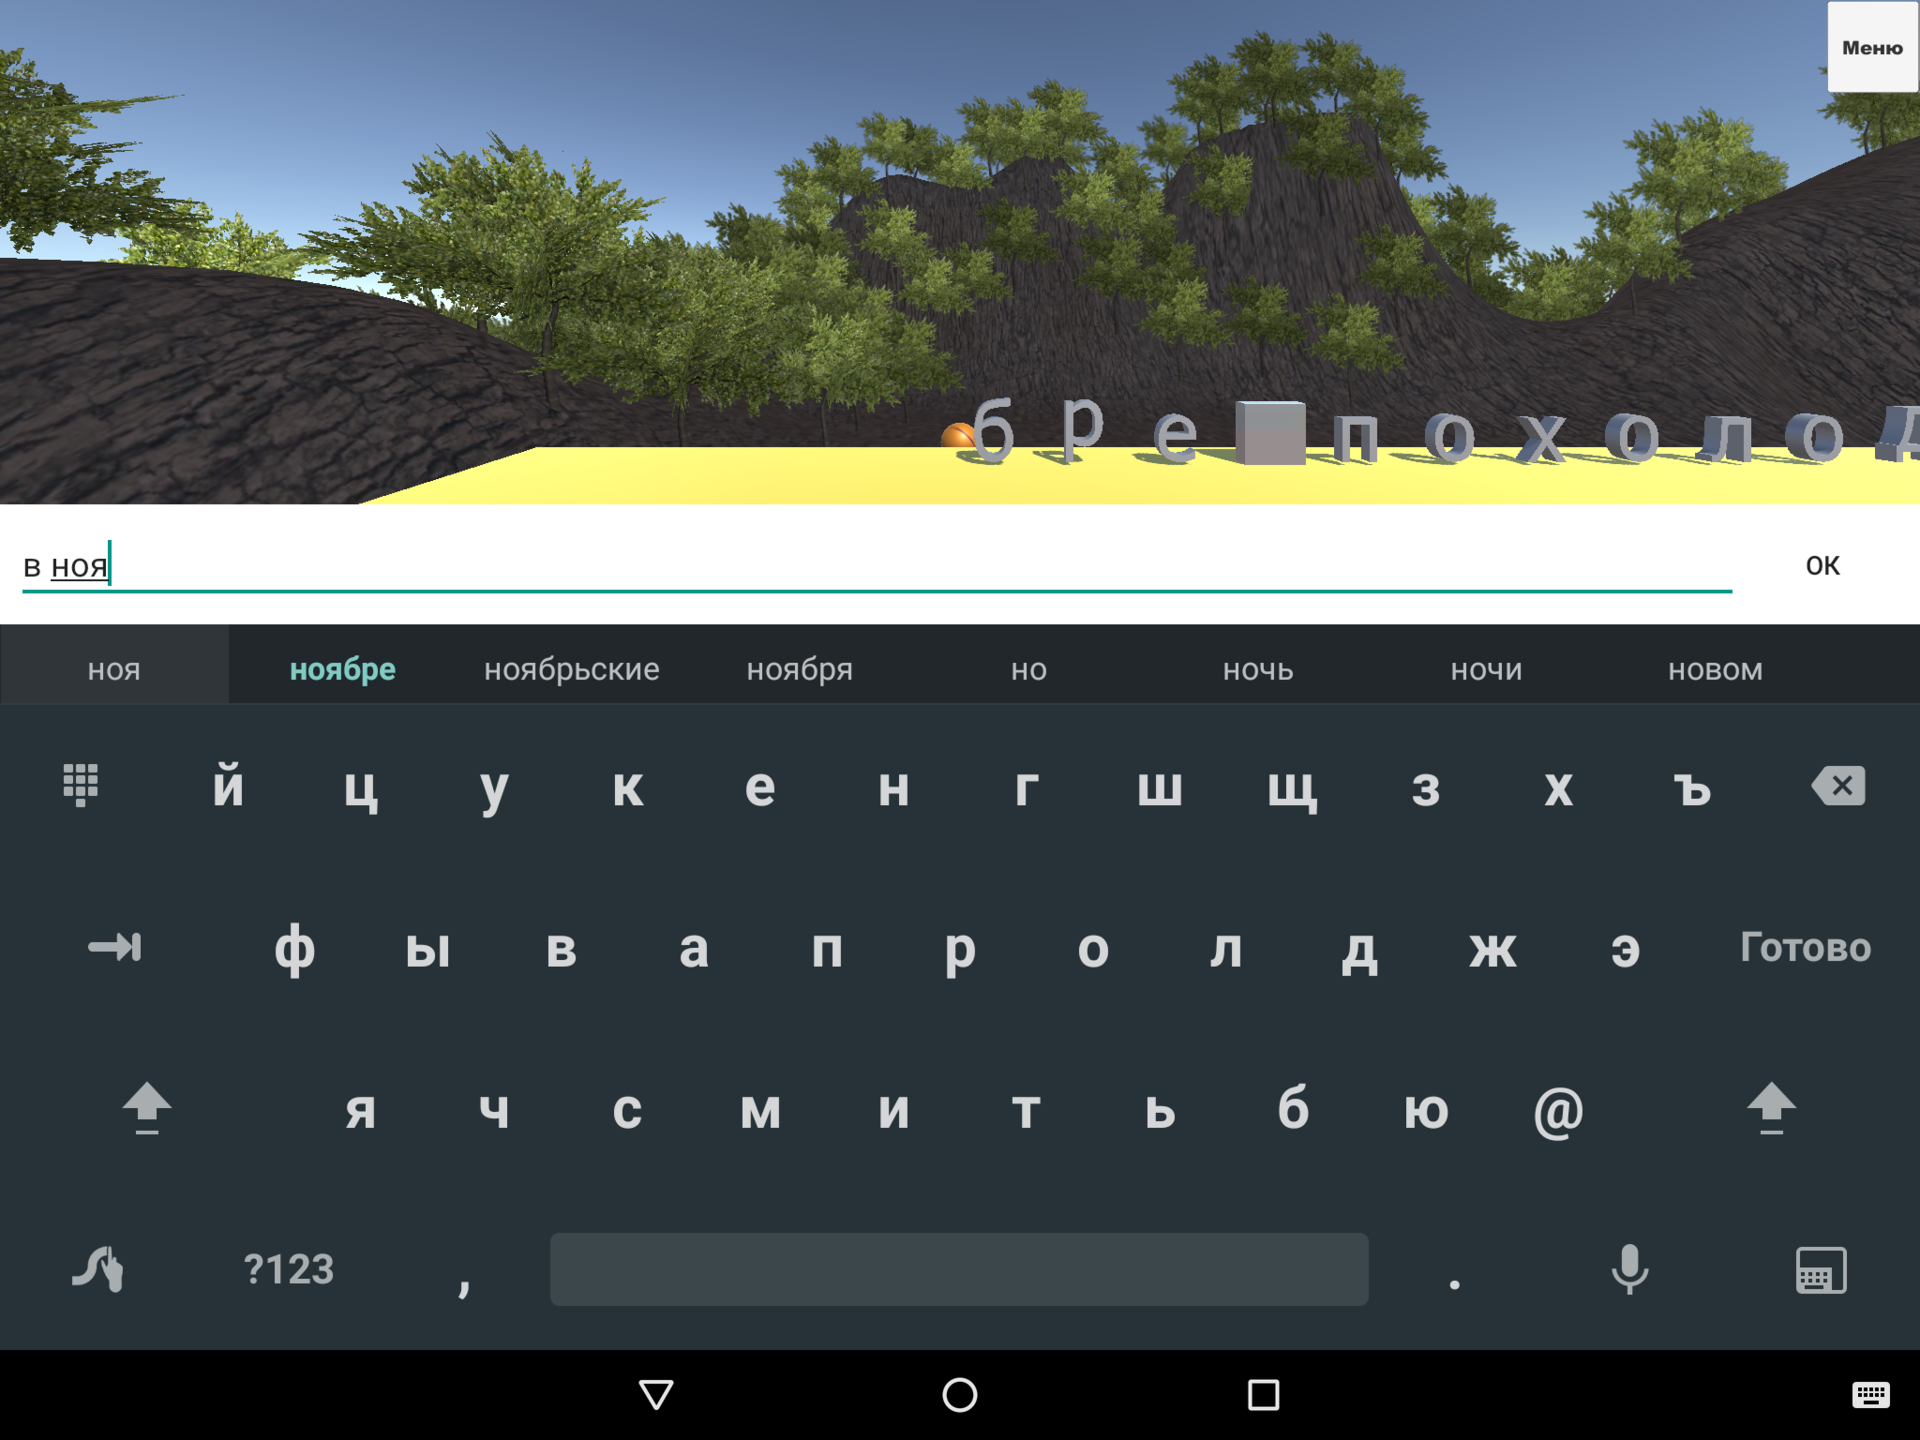 ChairInput. Пишем игру в Unity, управляемую с помощью виртуальной клавиатуры Android. Проблема с углом обзора камеры - 2